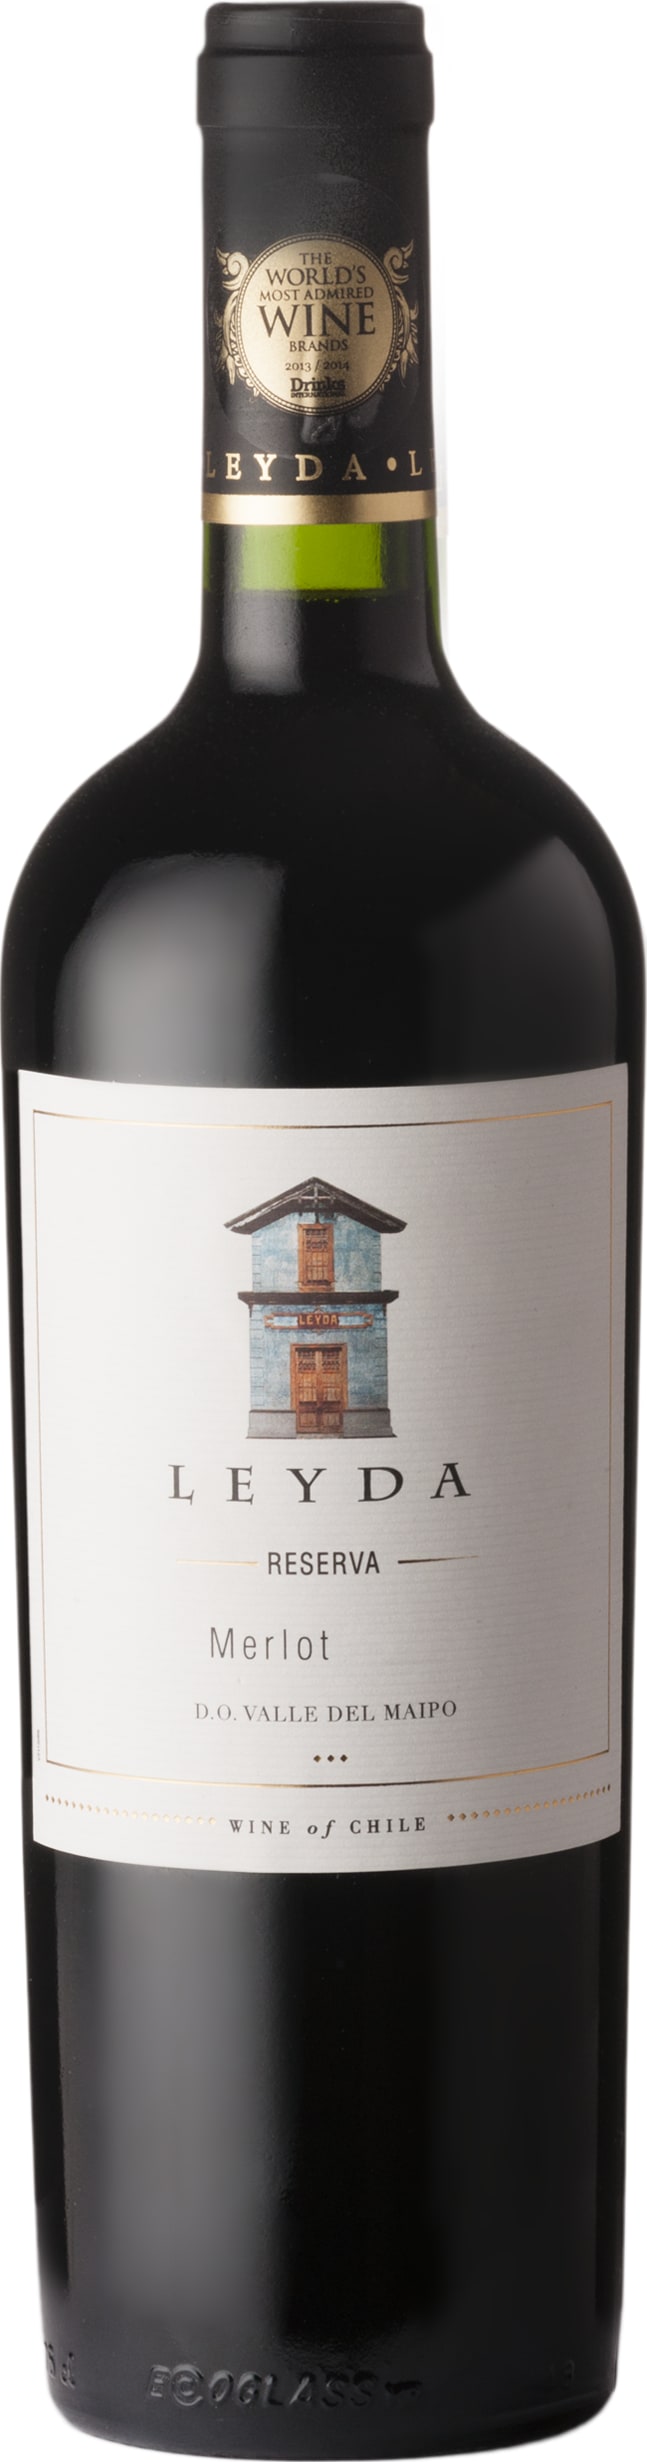 Vina Leyda Merlot Reserva 2022 75cl - Buy Vina Leyda Wines from GREAT WINES DIRECT wine shop